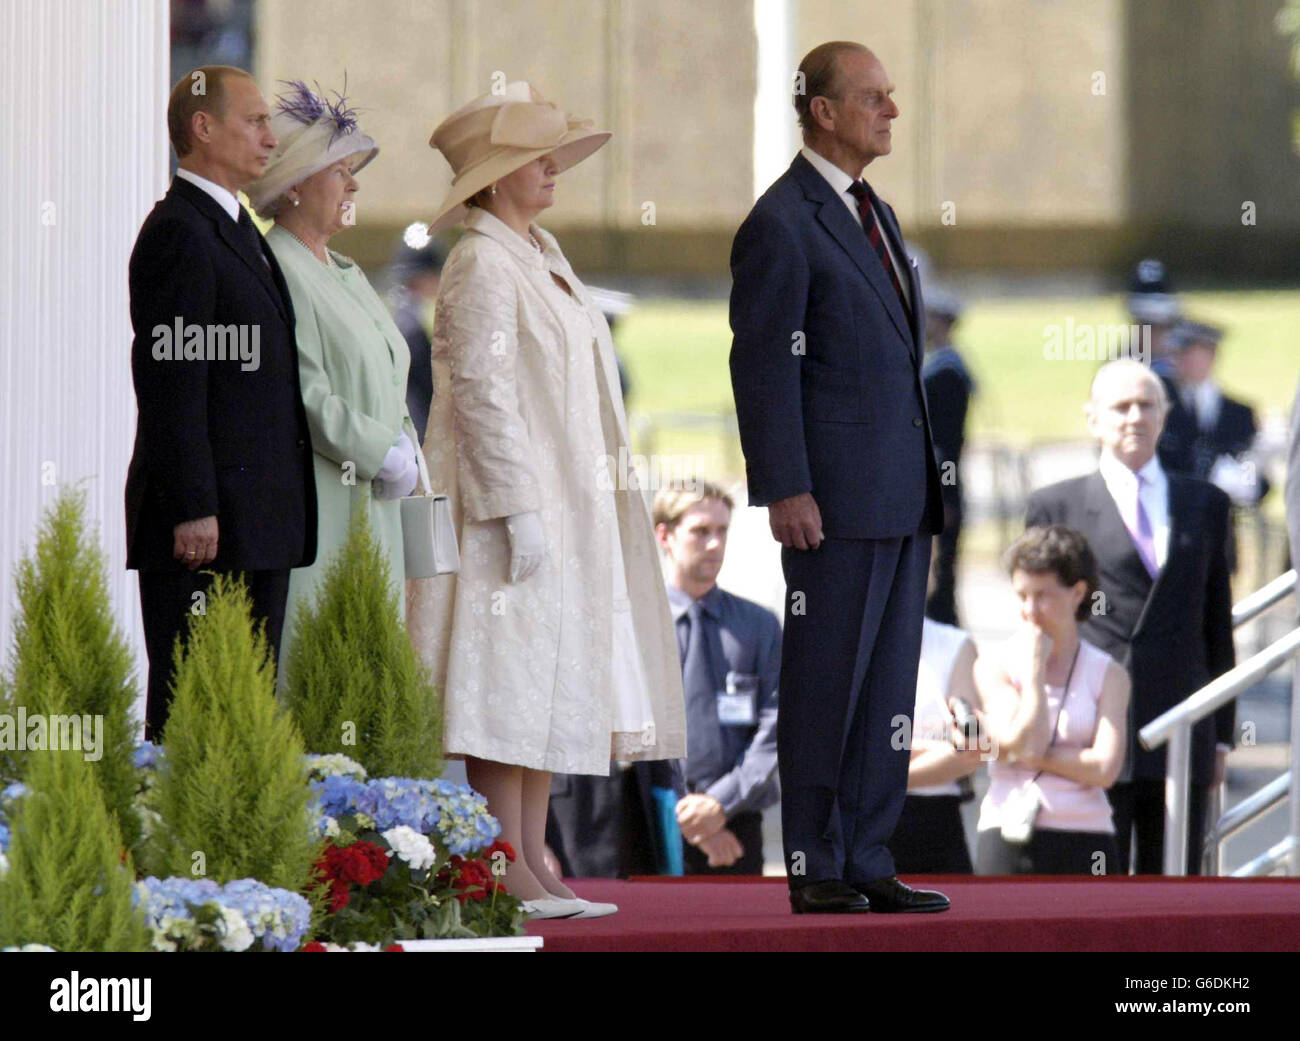 Le président Vladimir Poutine, la reine Elizabeth II, Lyudmila Poutine et le prince Philip inspectent les gardes du palais de Buckingham lors de la visite d'État des dirigeants russes. C'est la première visite d'État d'un dirigeant russe depuis les jours des Tsars. Banque D'Images